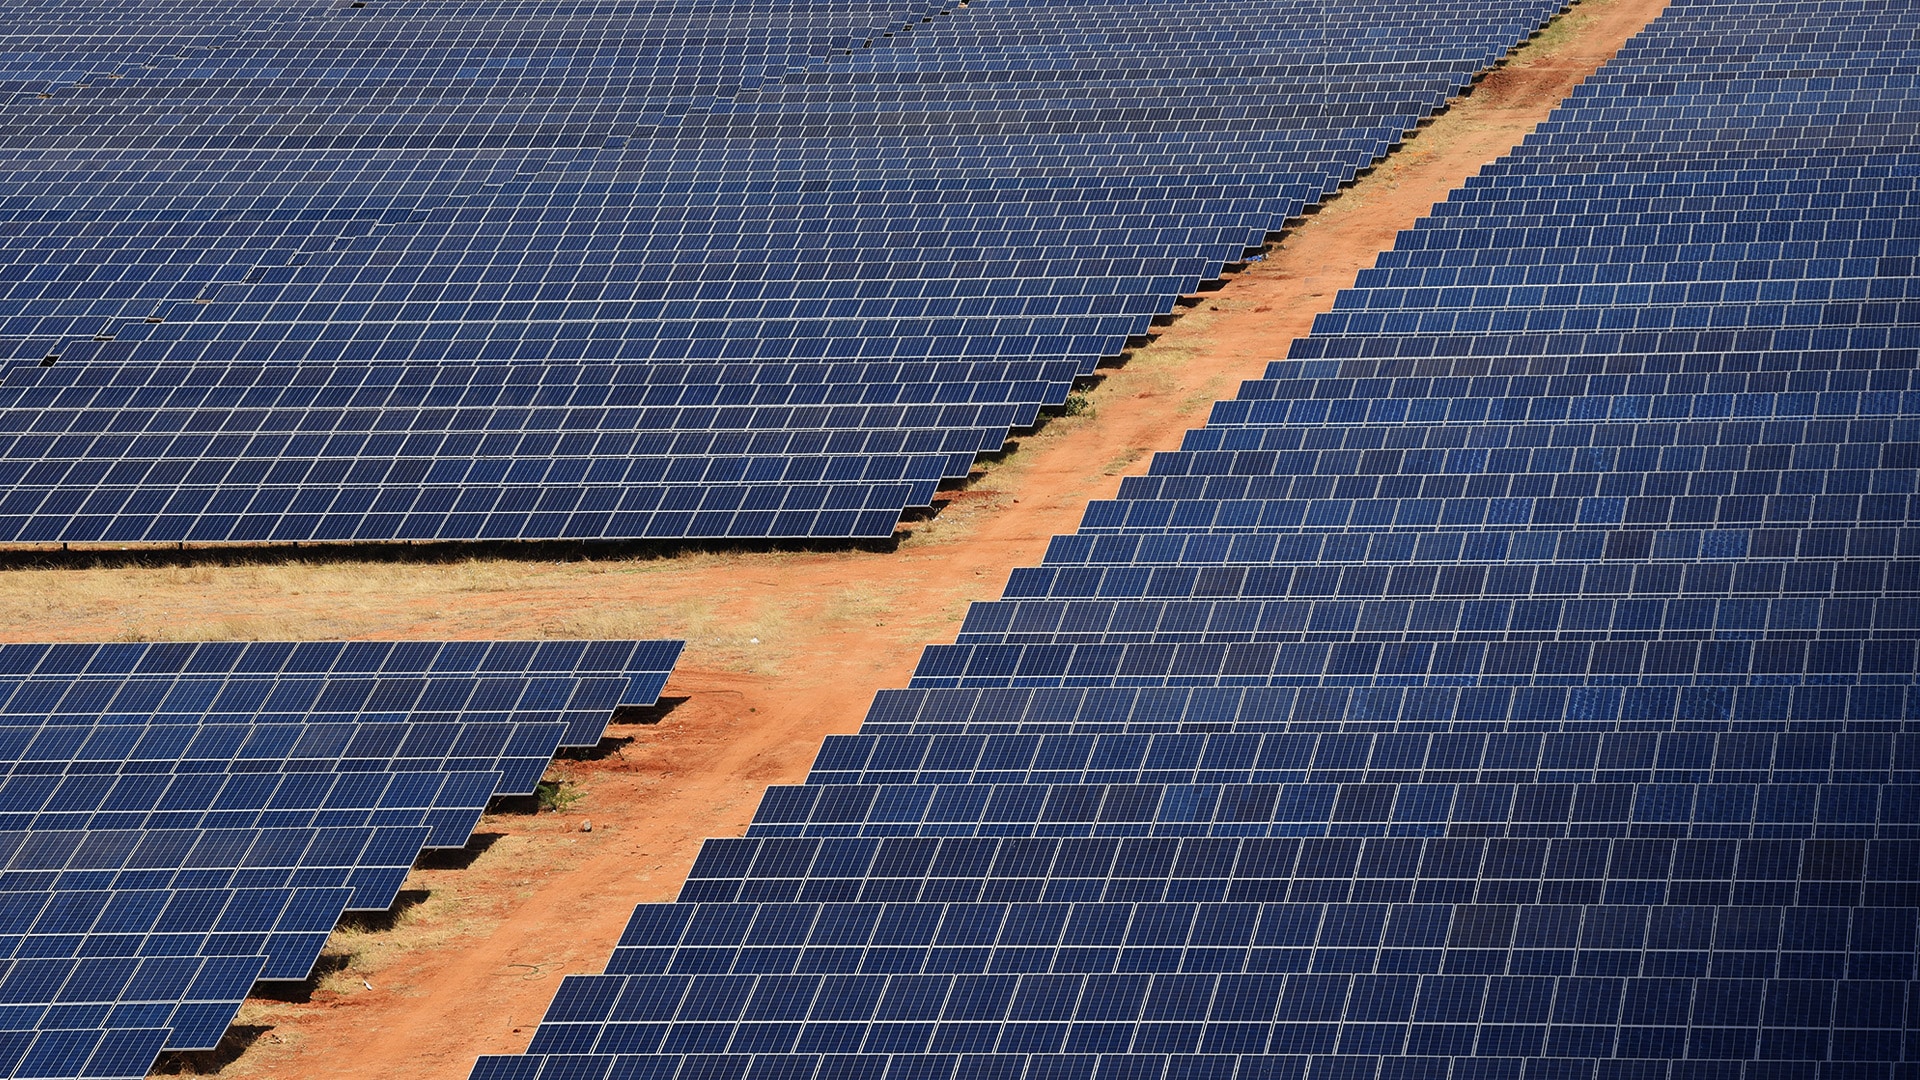 Avaada Energy bags 560 MW solar project to supply power in Maharashtra